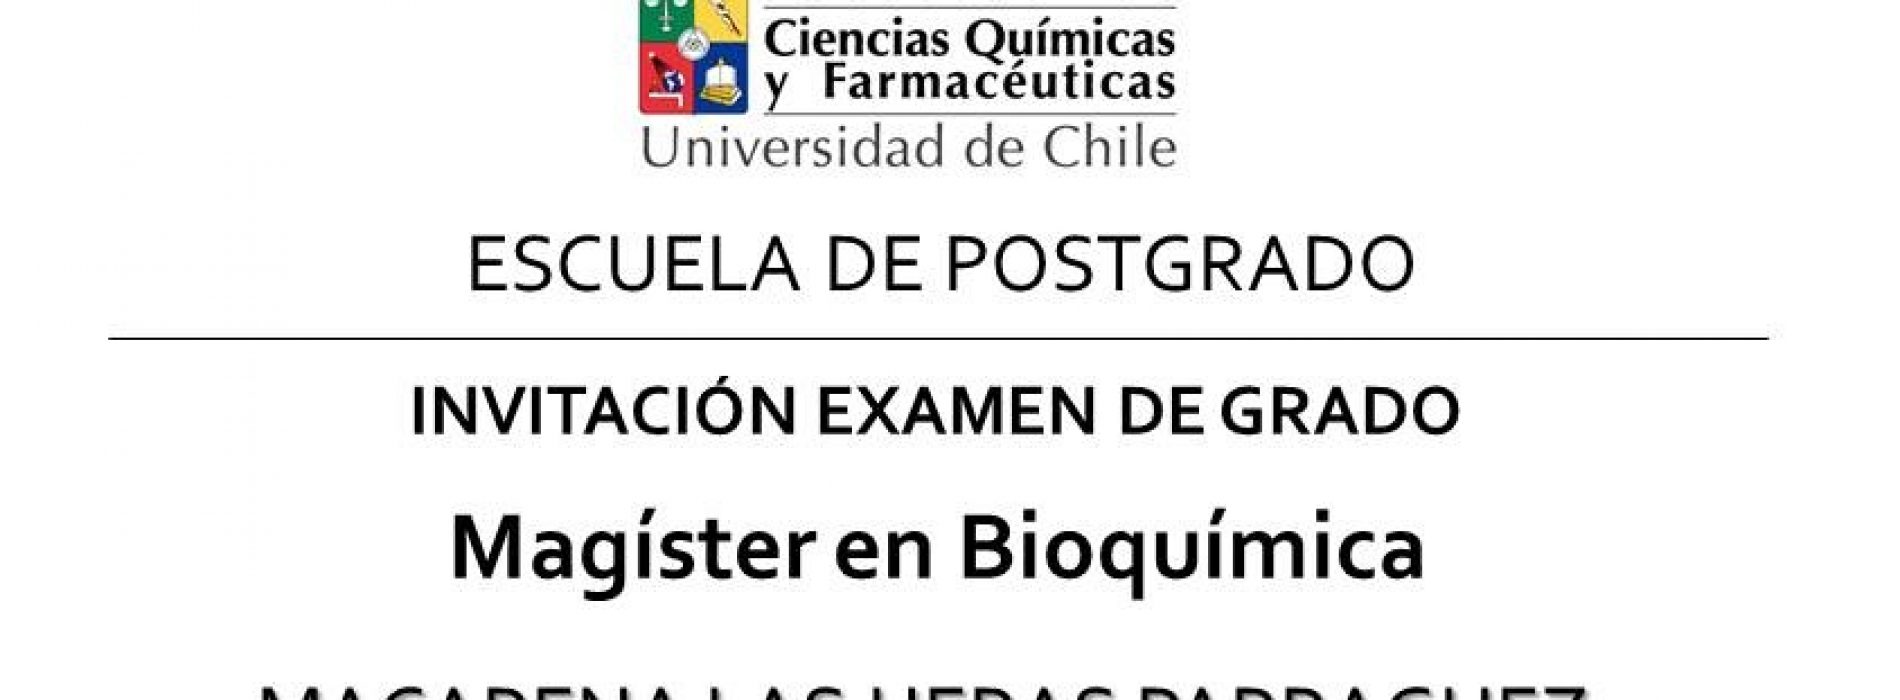 Invitación Examen de Grado Magíster en Bioquímica – Macarena Las Heras Parraguez